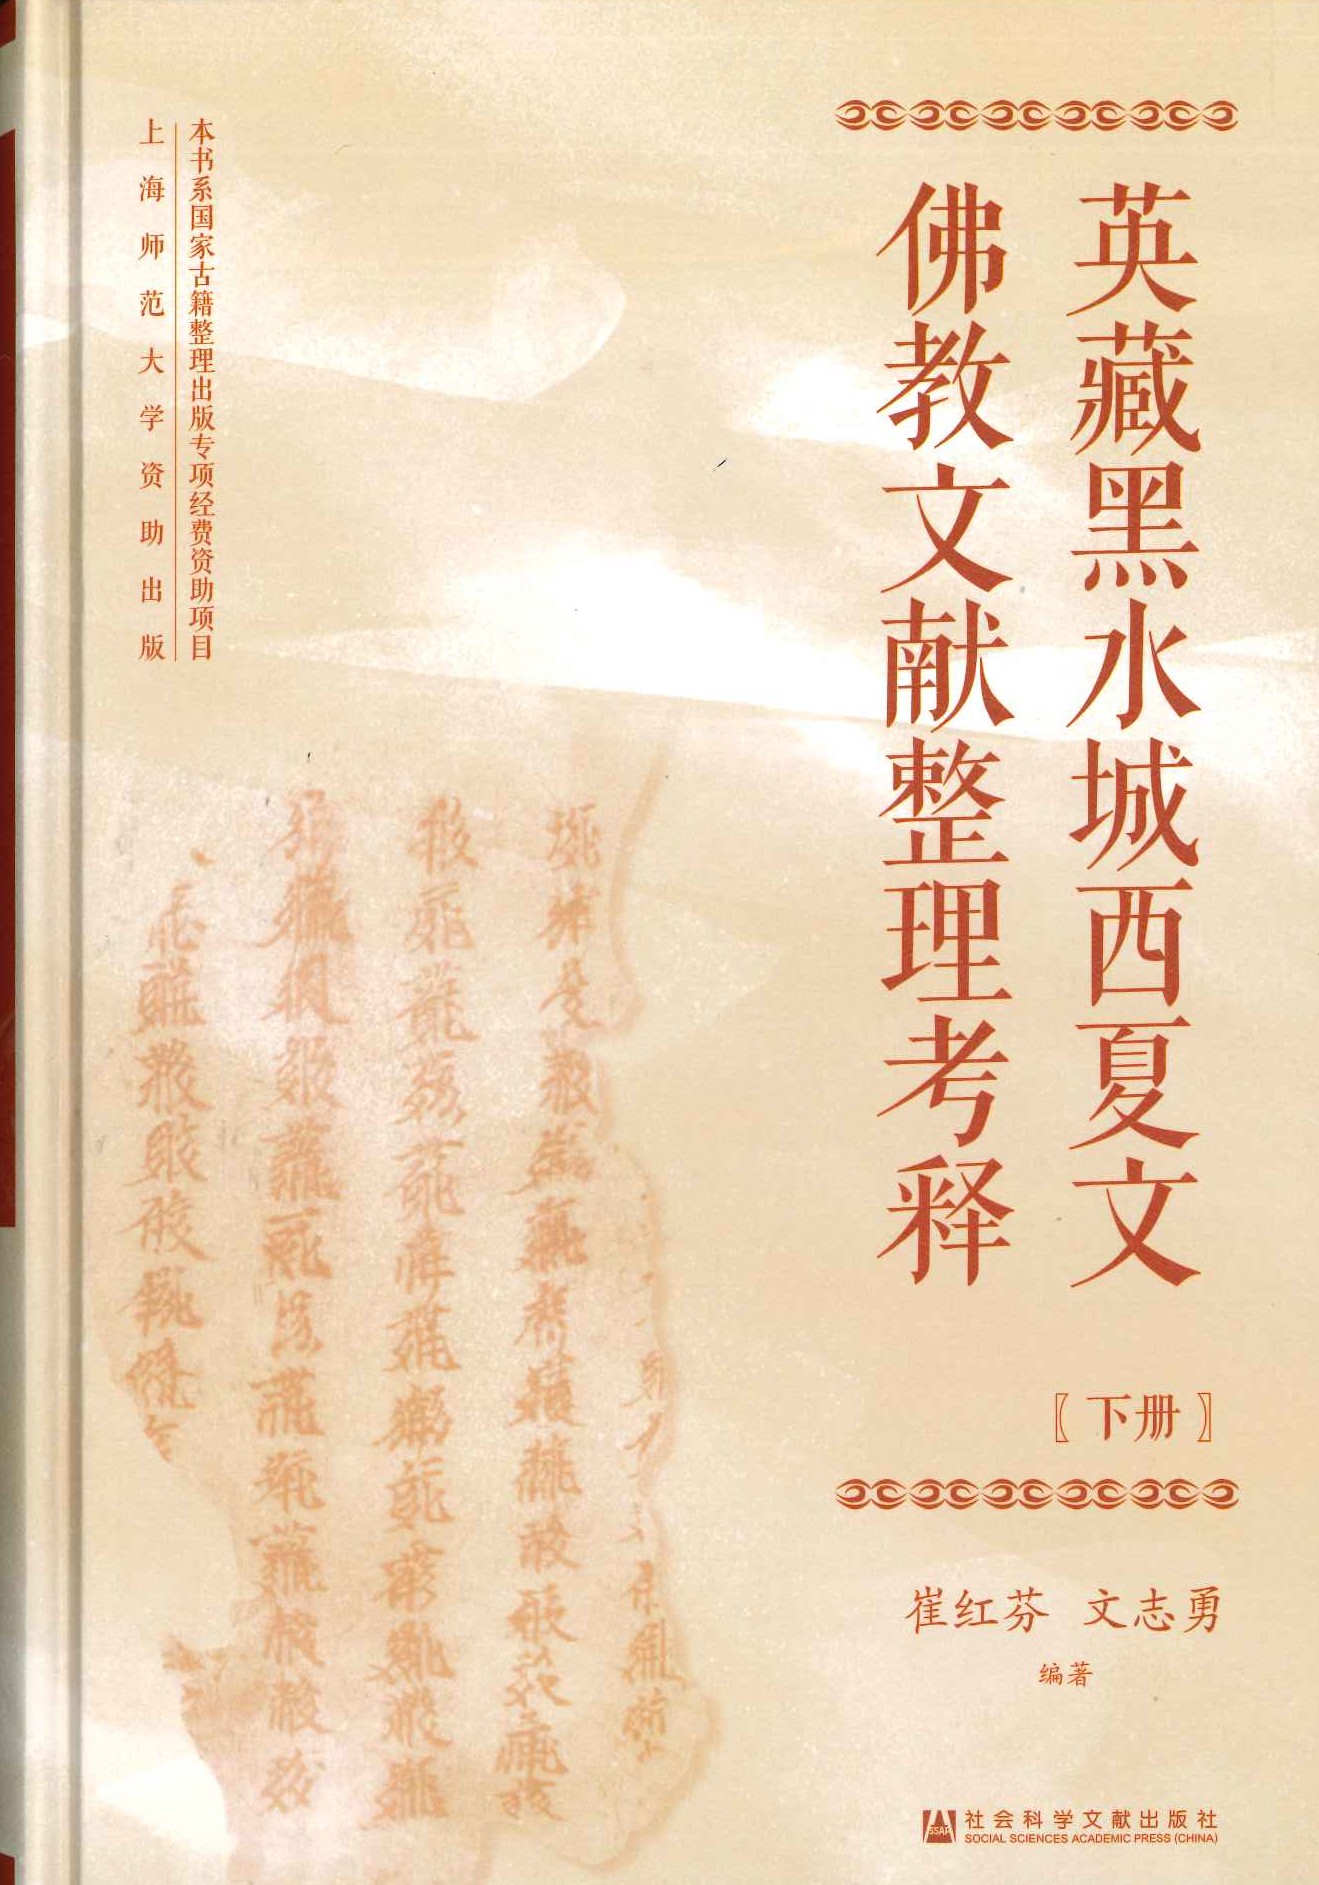 英藏黑水城西夏文佛教文献整理考释(全3)